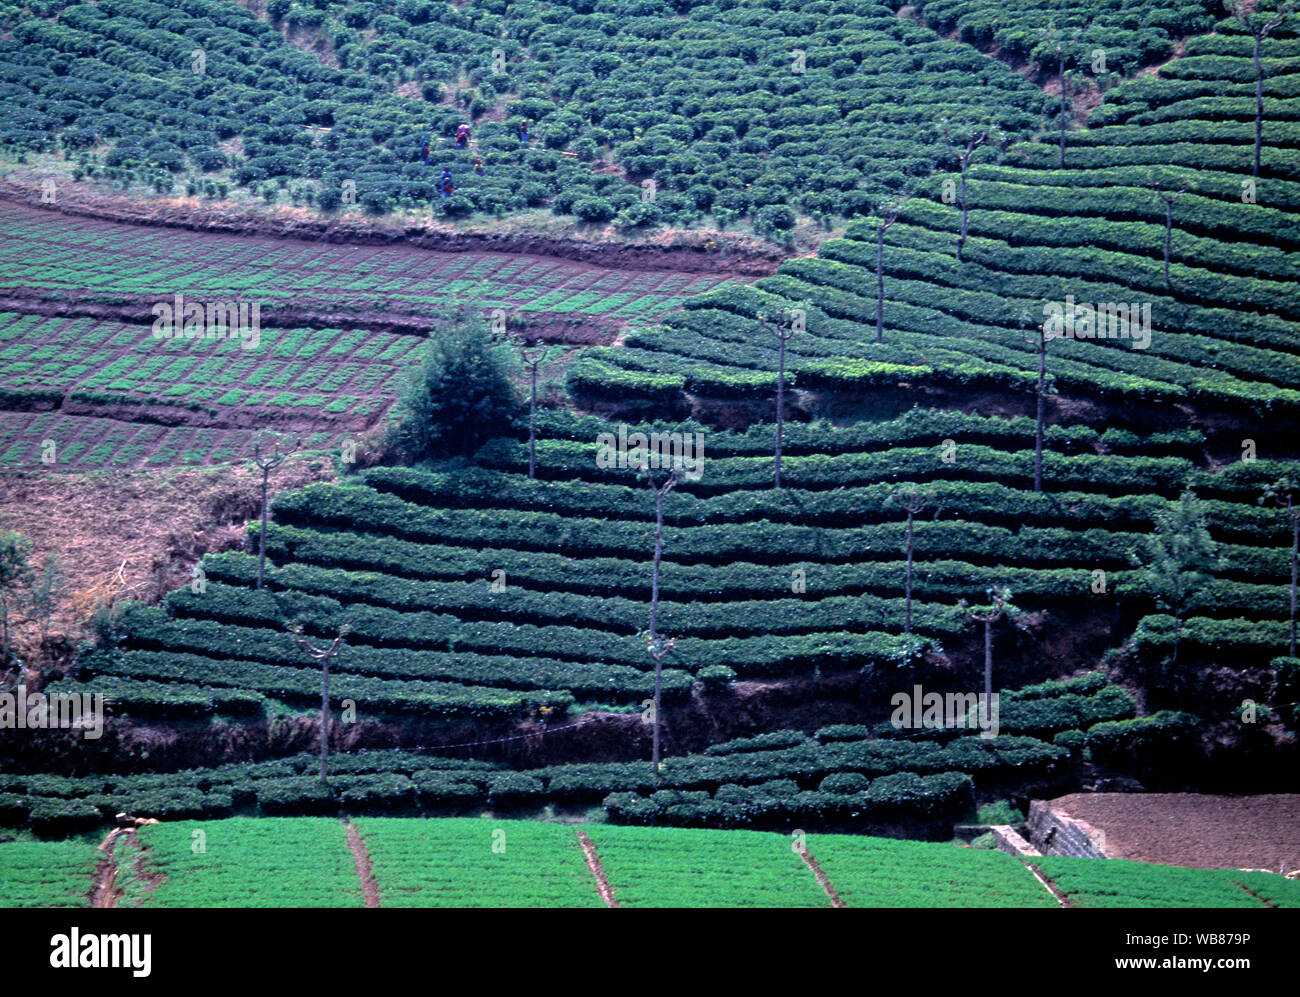 asia, asian, India, large tea plantation on sloping landscape Stock Photo